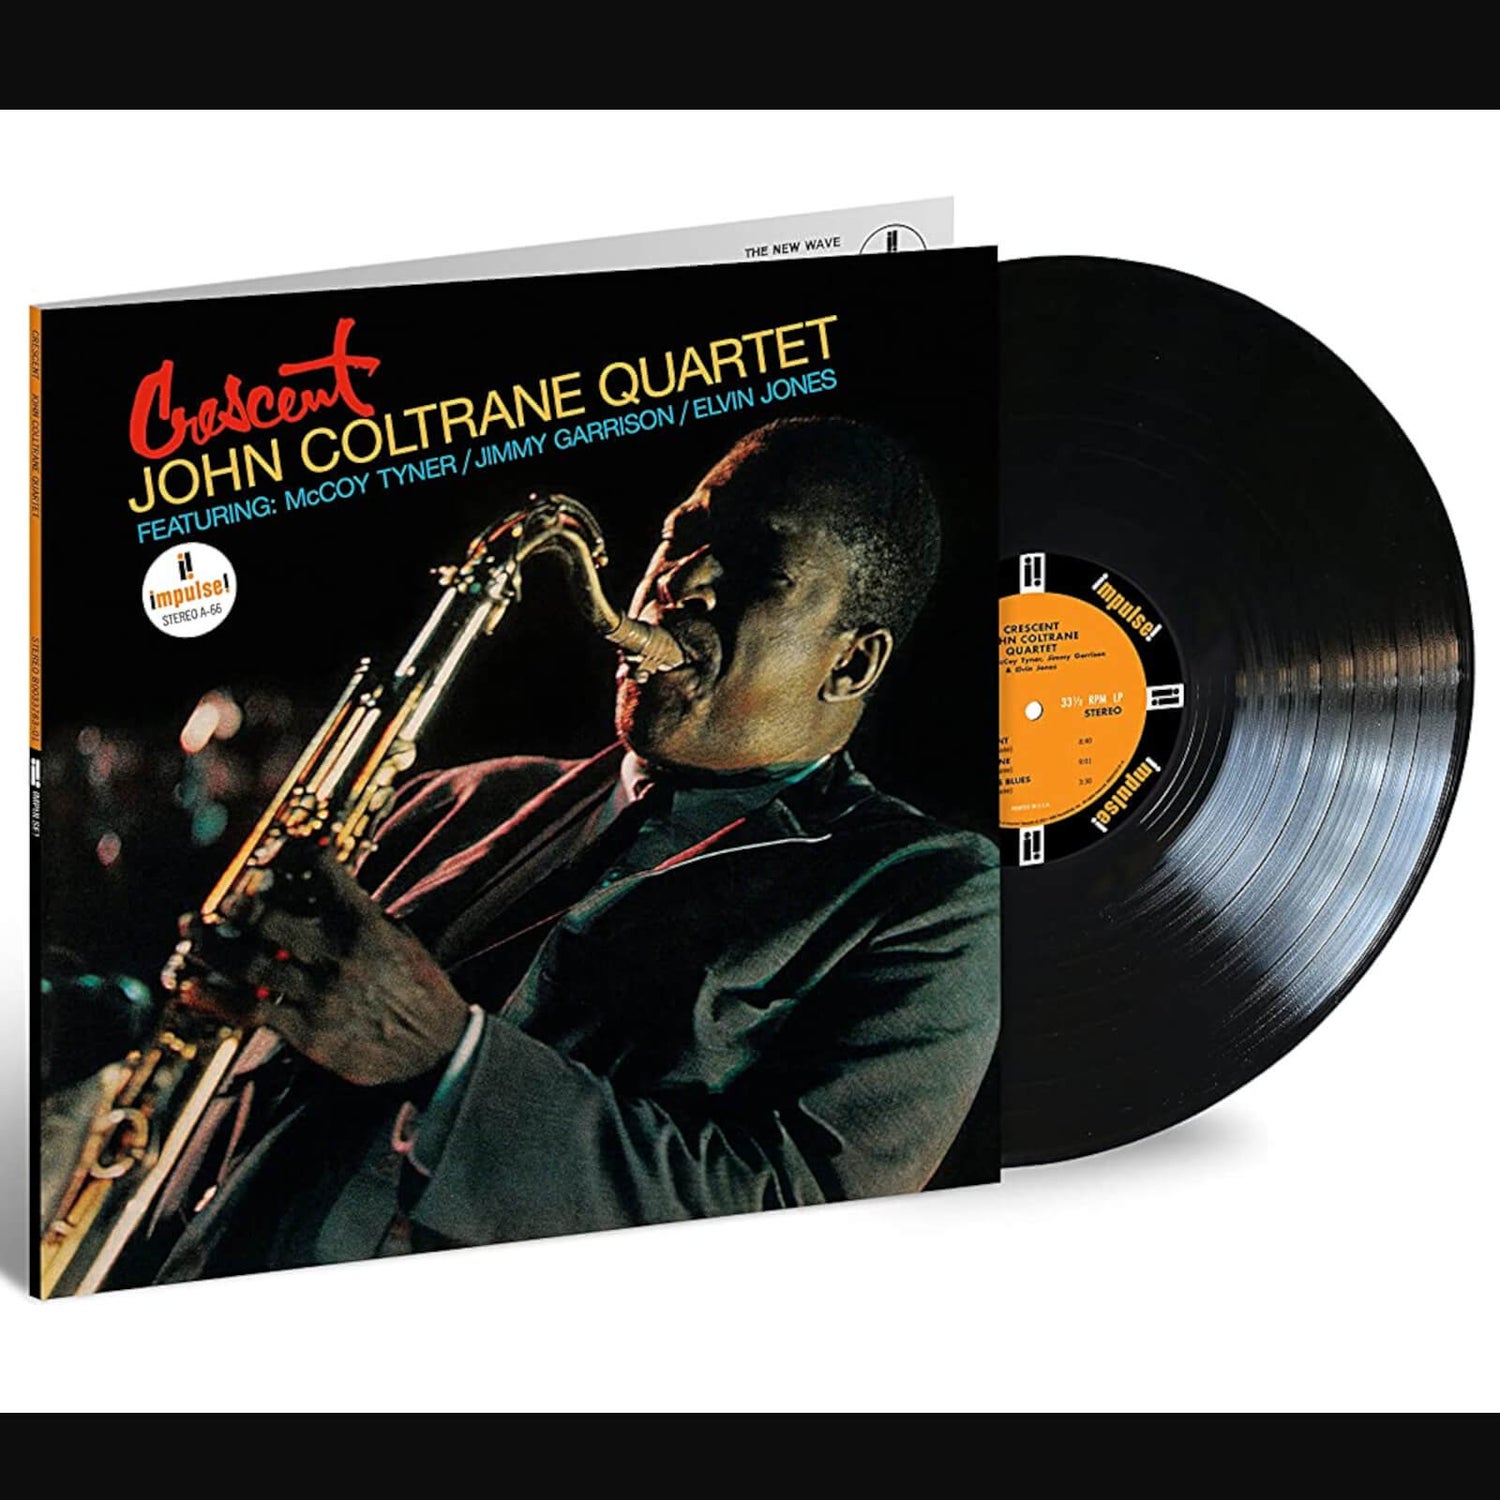 John Coltrane - Crescent (Verve Acoustic Sounds Series) Vinyl